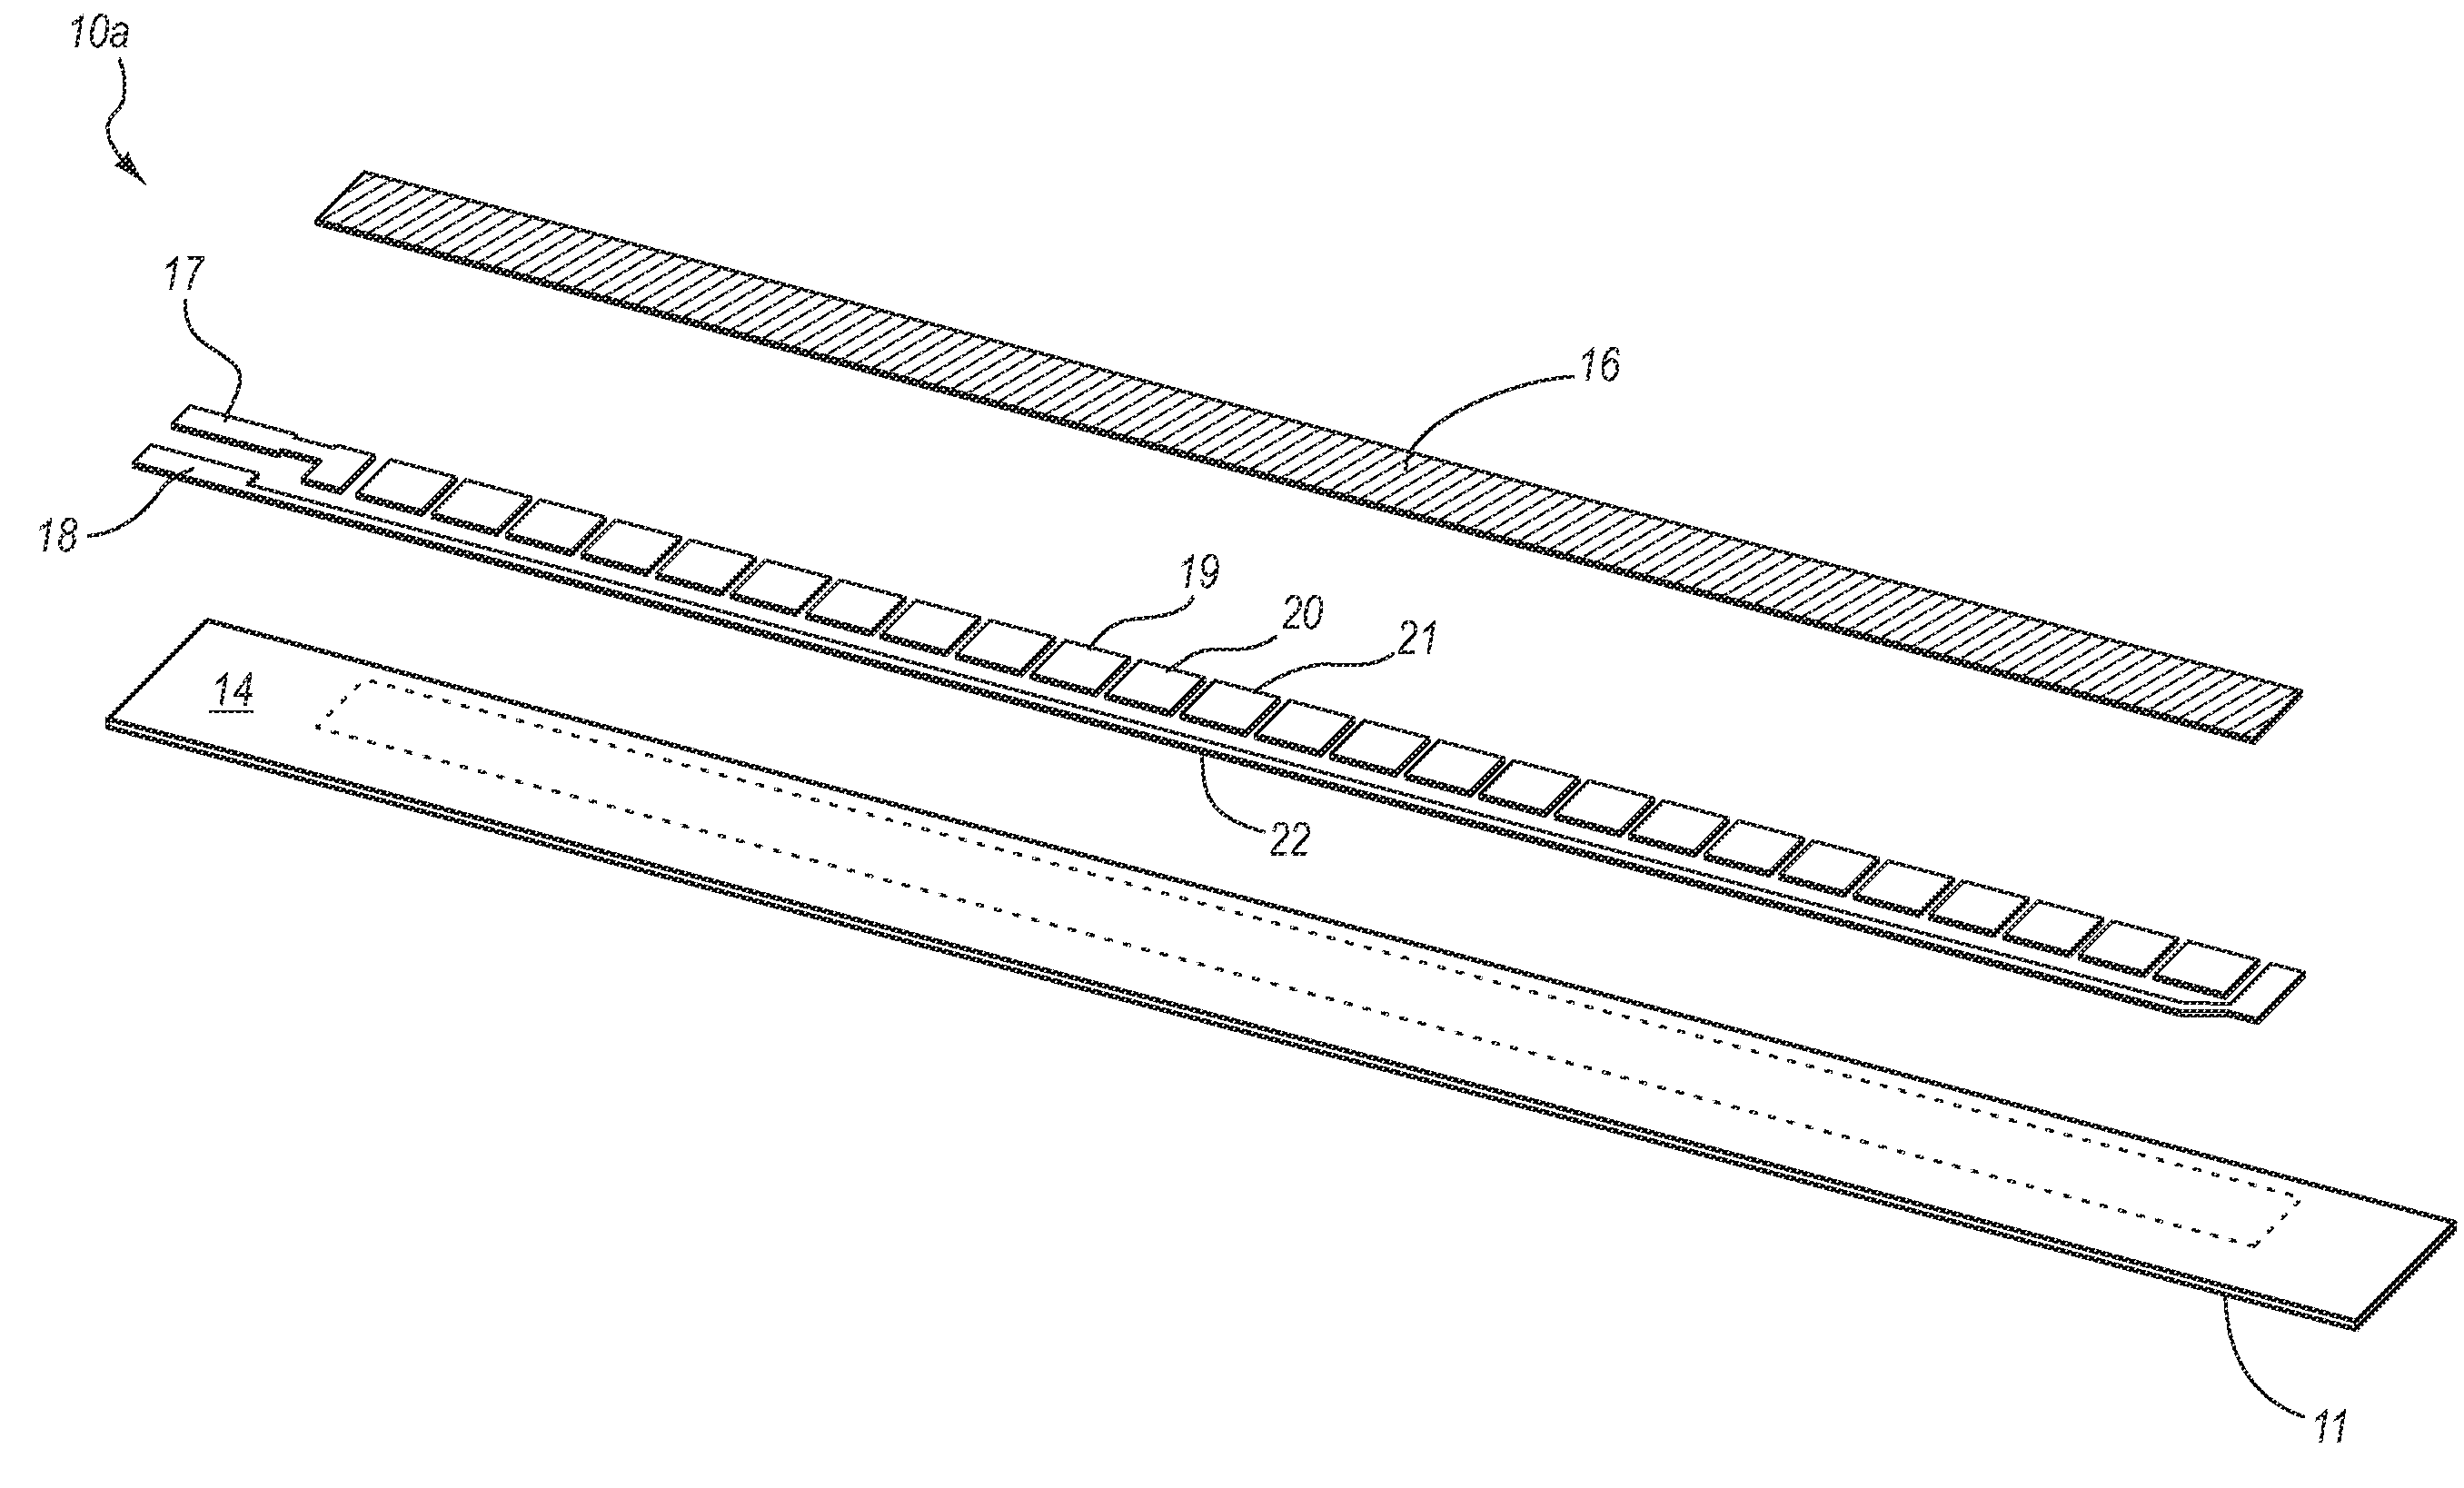 Bi-directional bend resistor